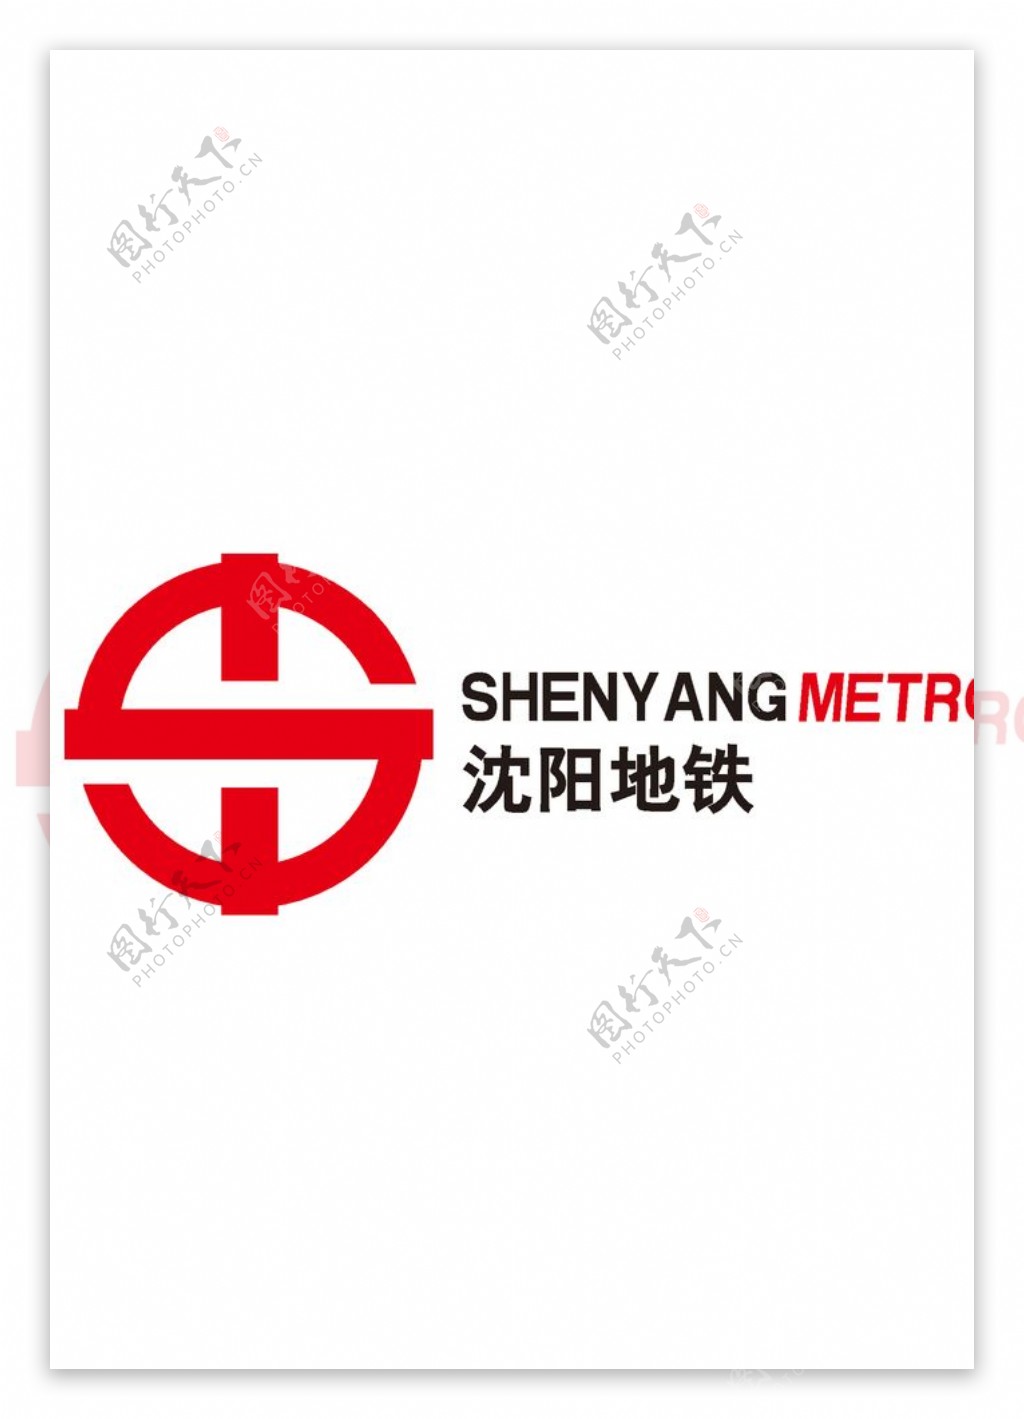 沈阳地铁logo